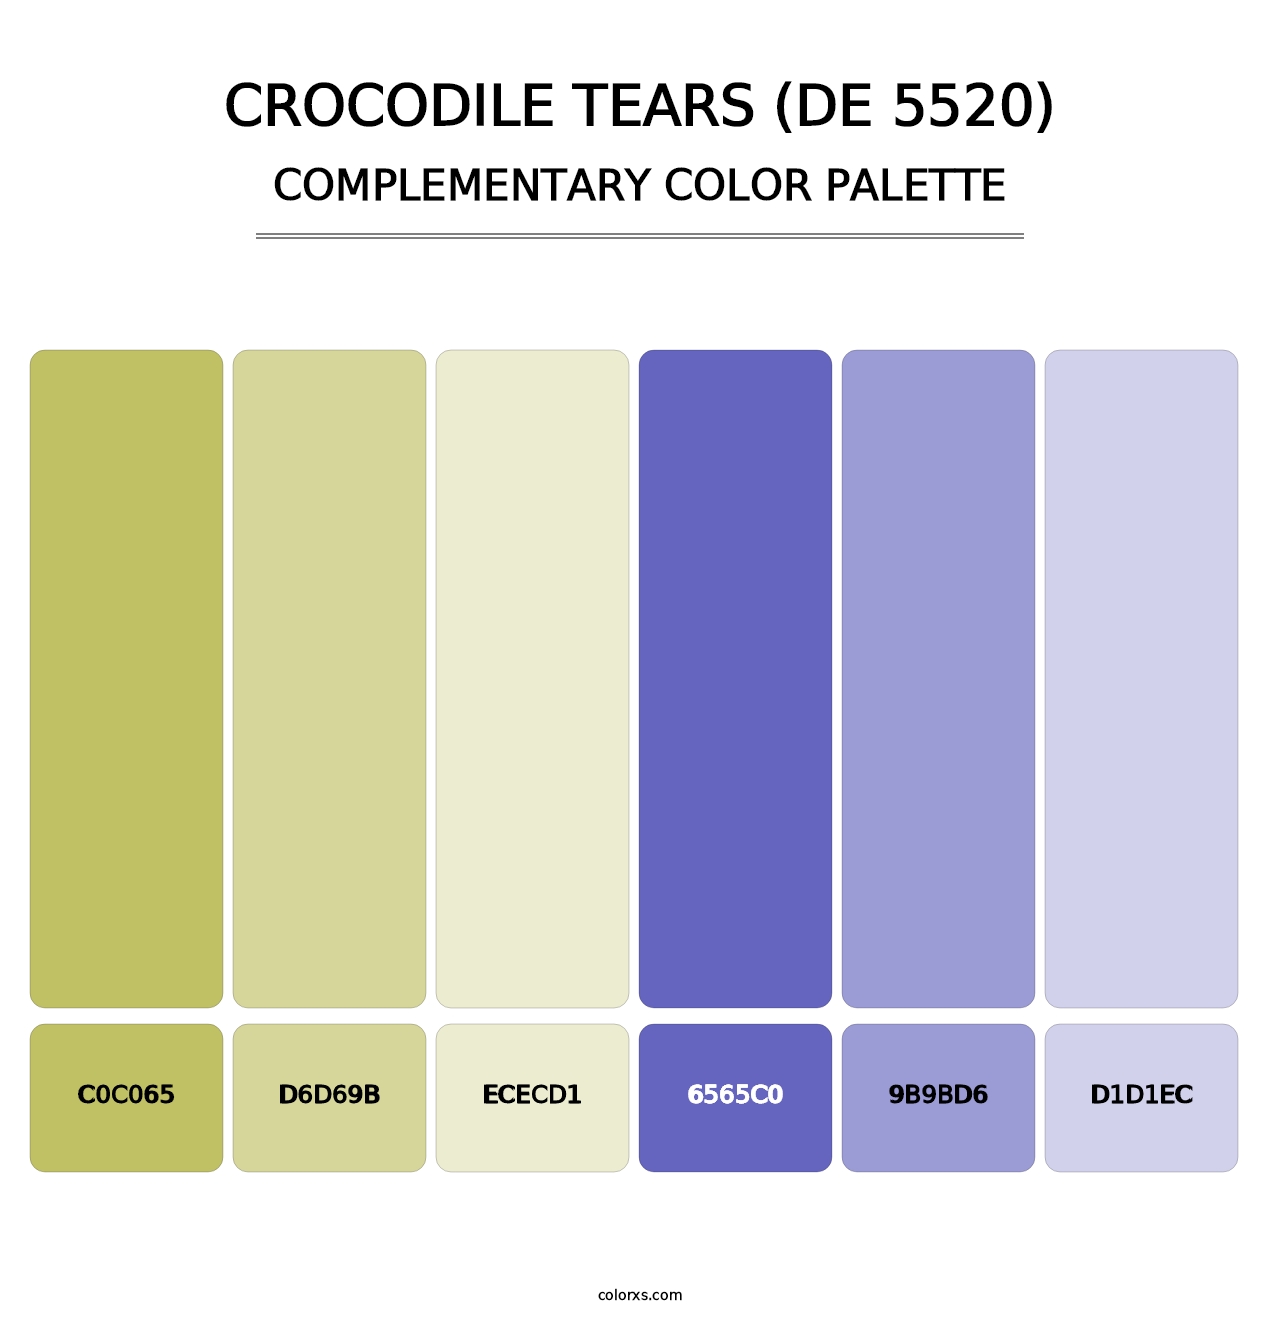 Crocodile Tears (DE 5520) - Complementary Color Palette